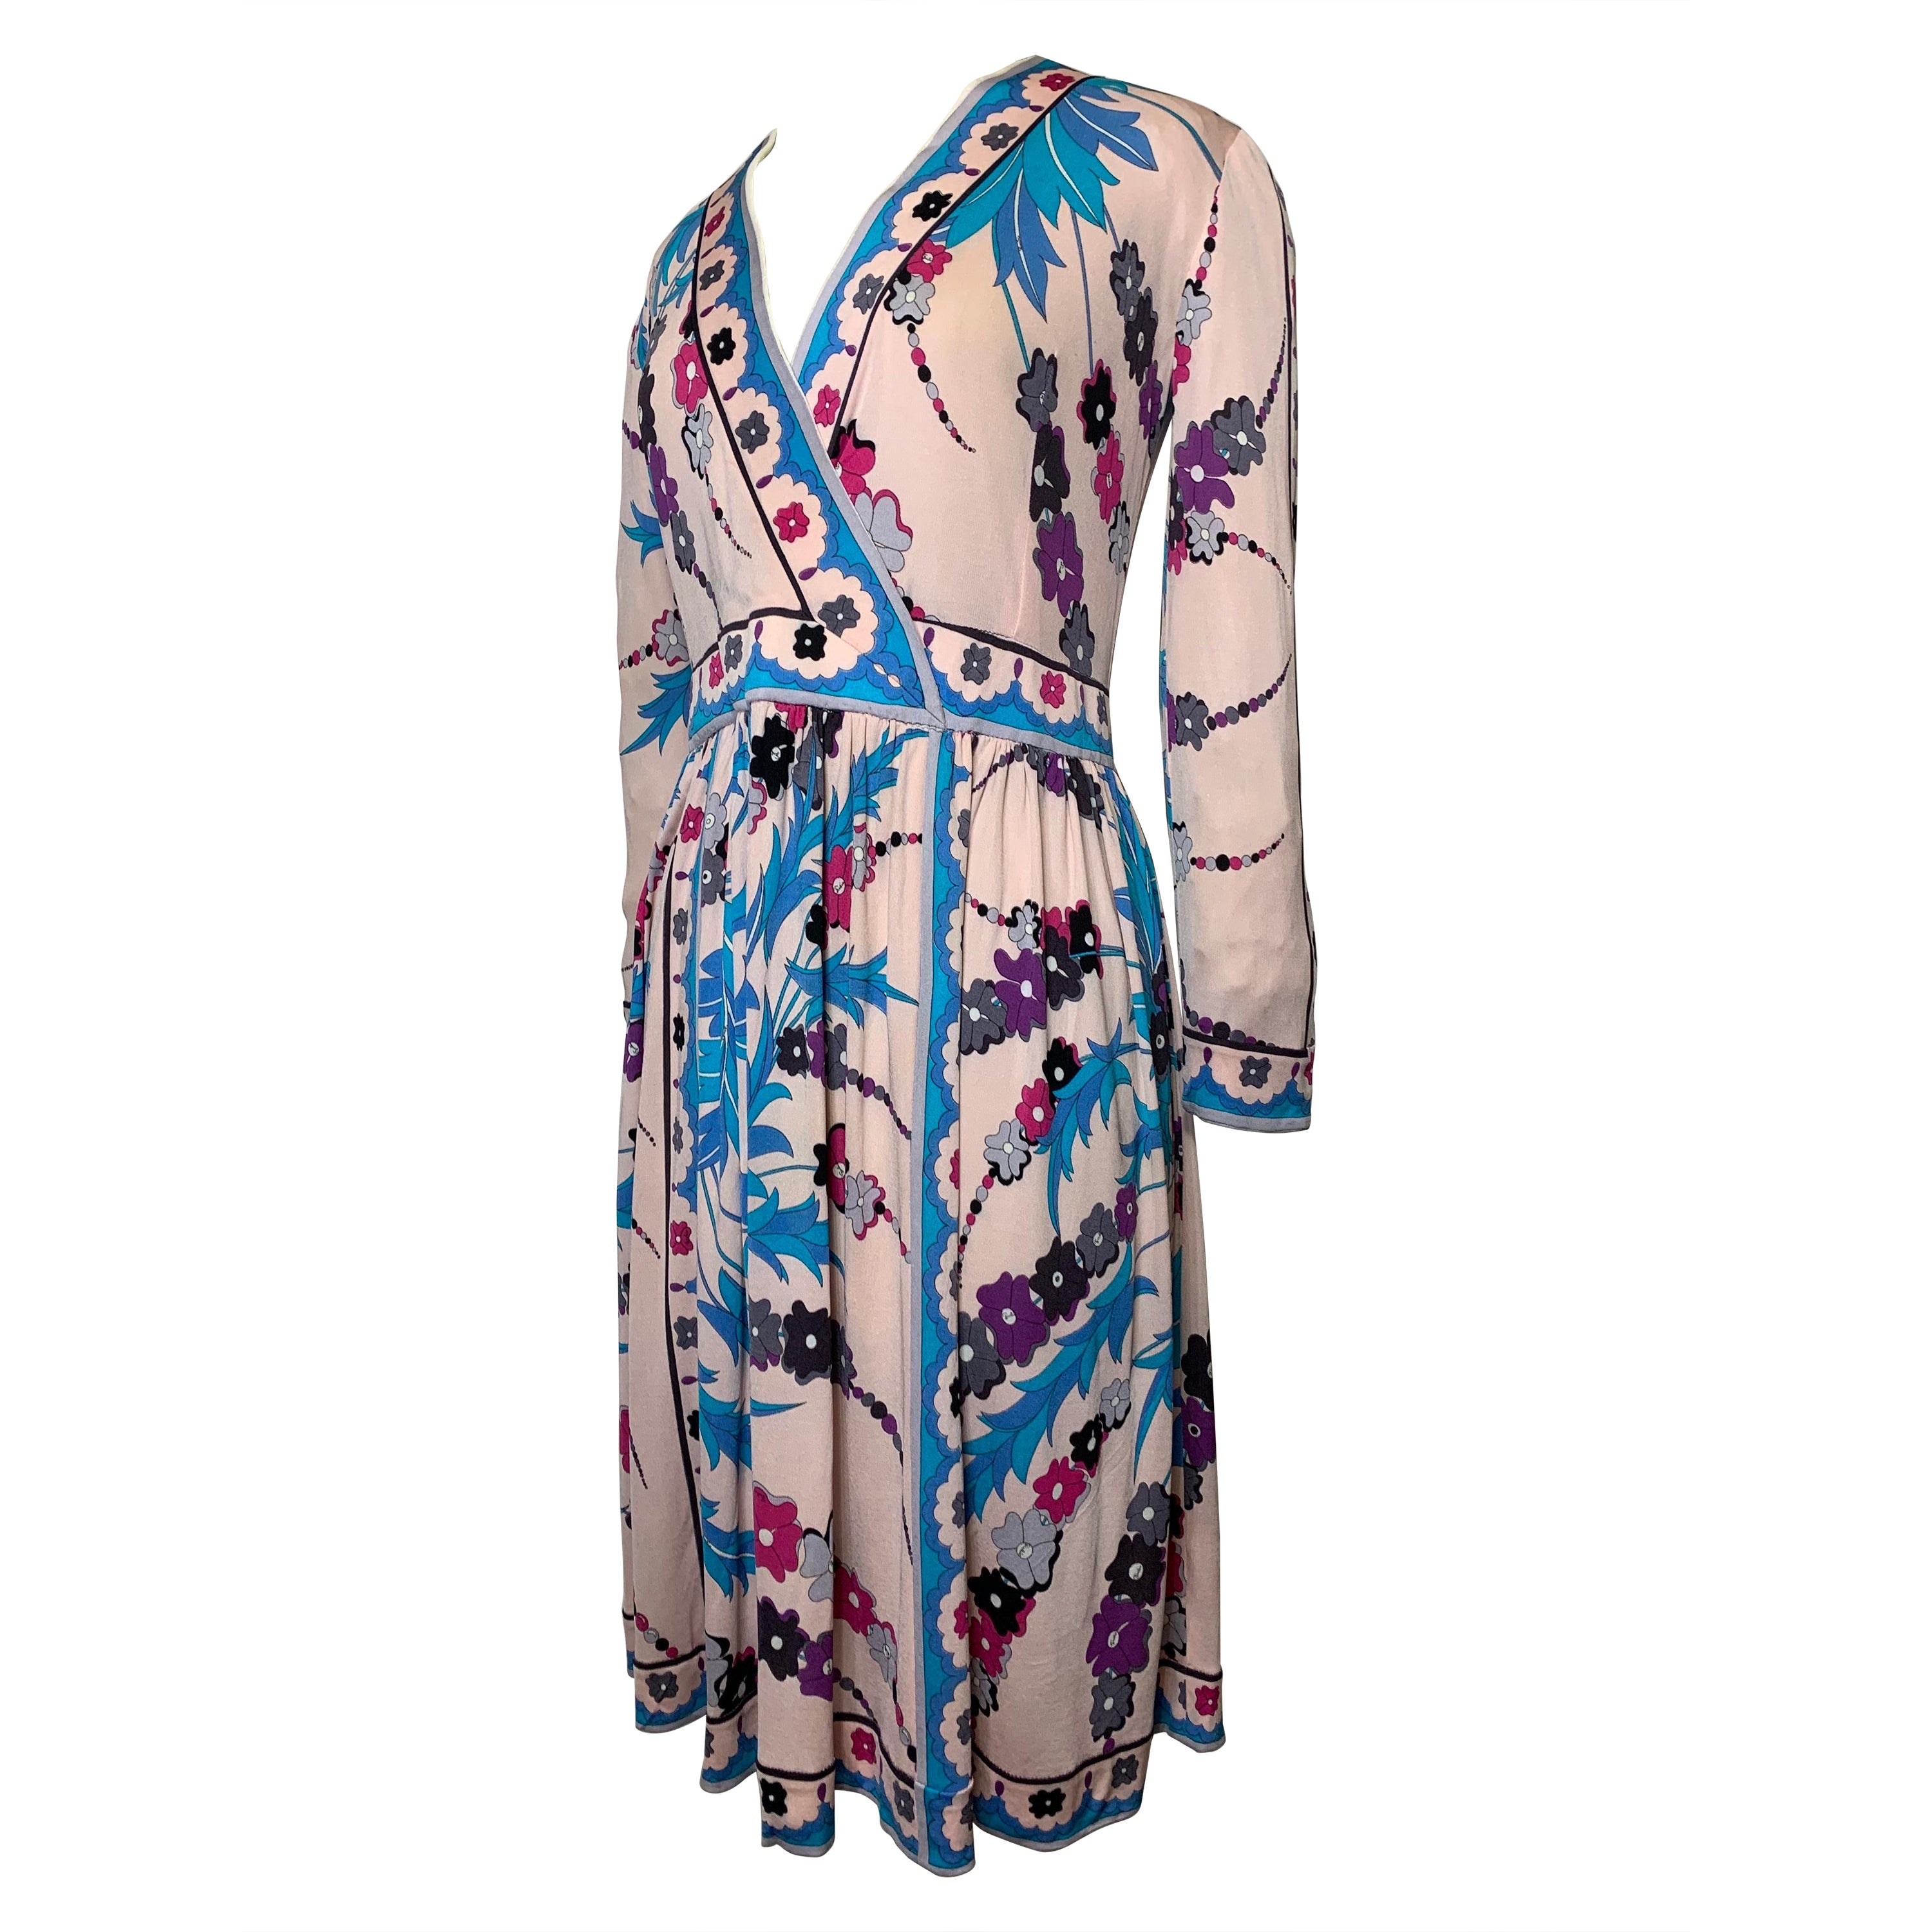 Robe portefeuille Emilio Pucci des années 1970 à imprimé floral avec jupe et bandes en vente